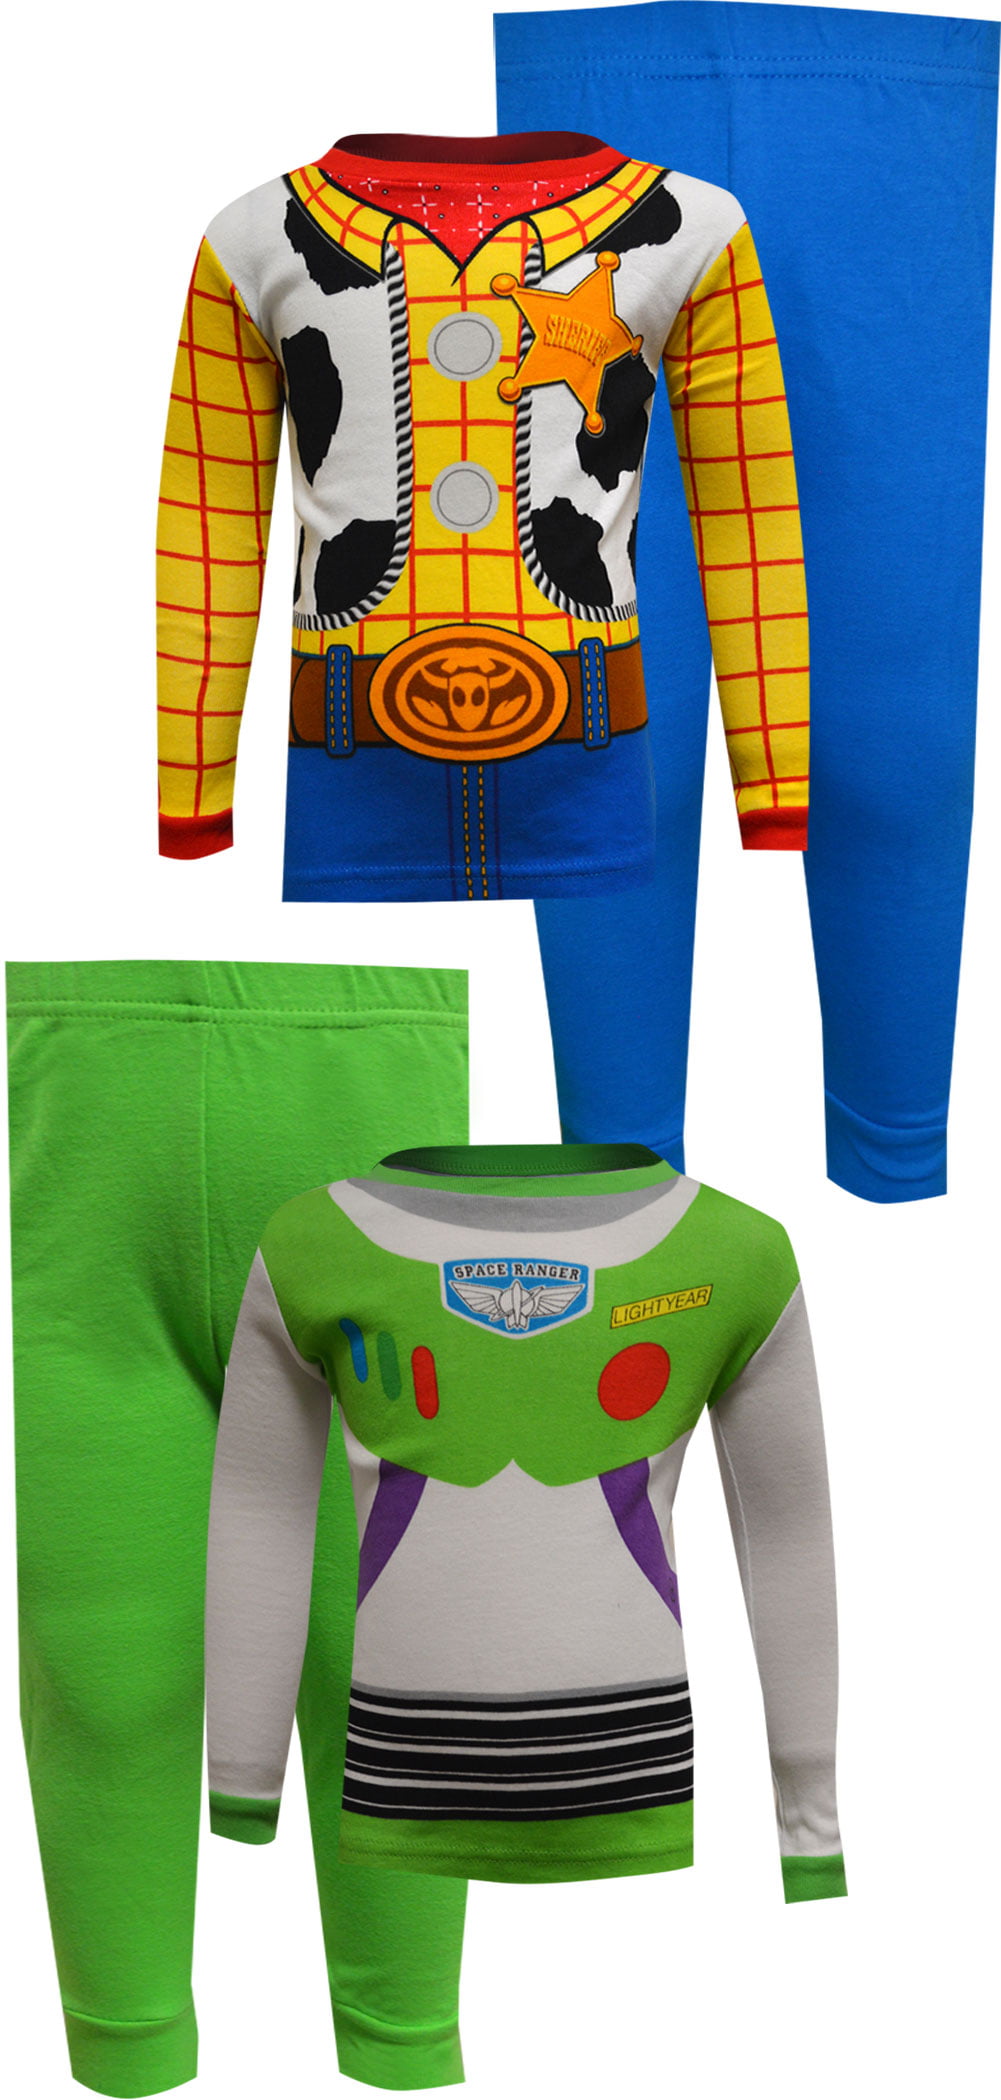 Kids Toy Story Woody Buzz Pyjama Casual Long Sleeve Pajama Sleepwear Nightwear